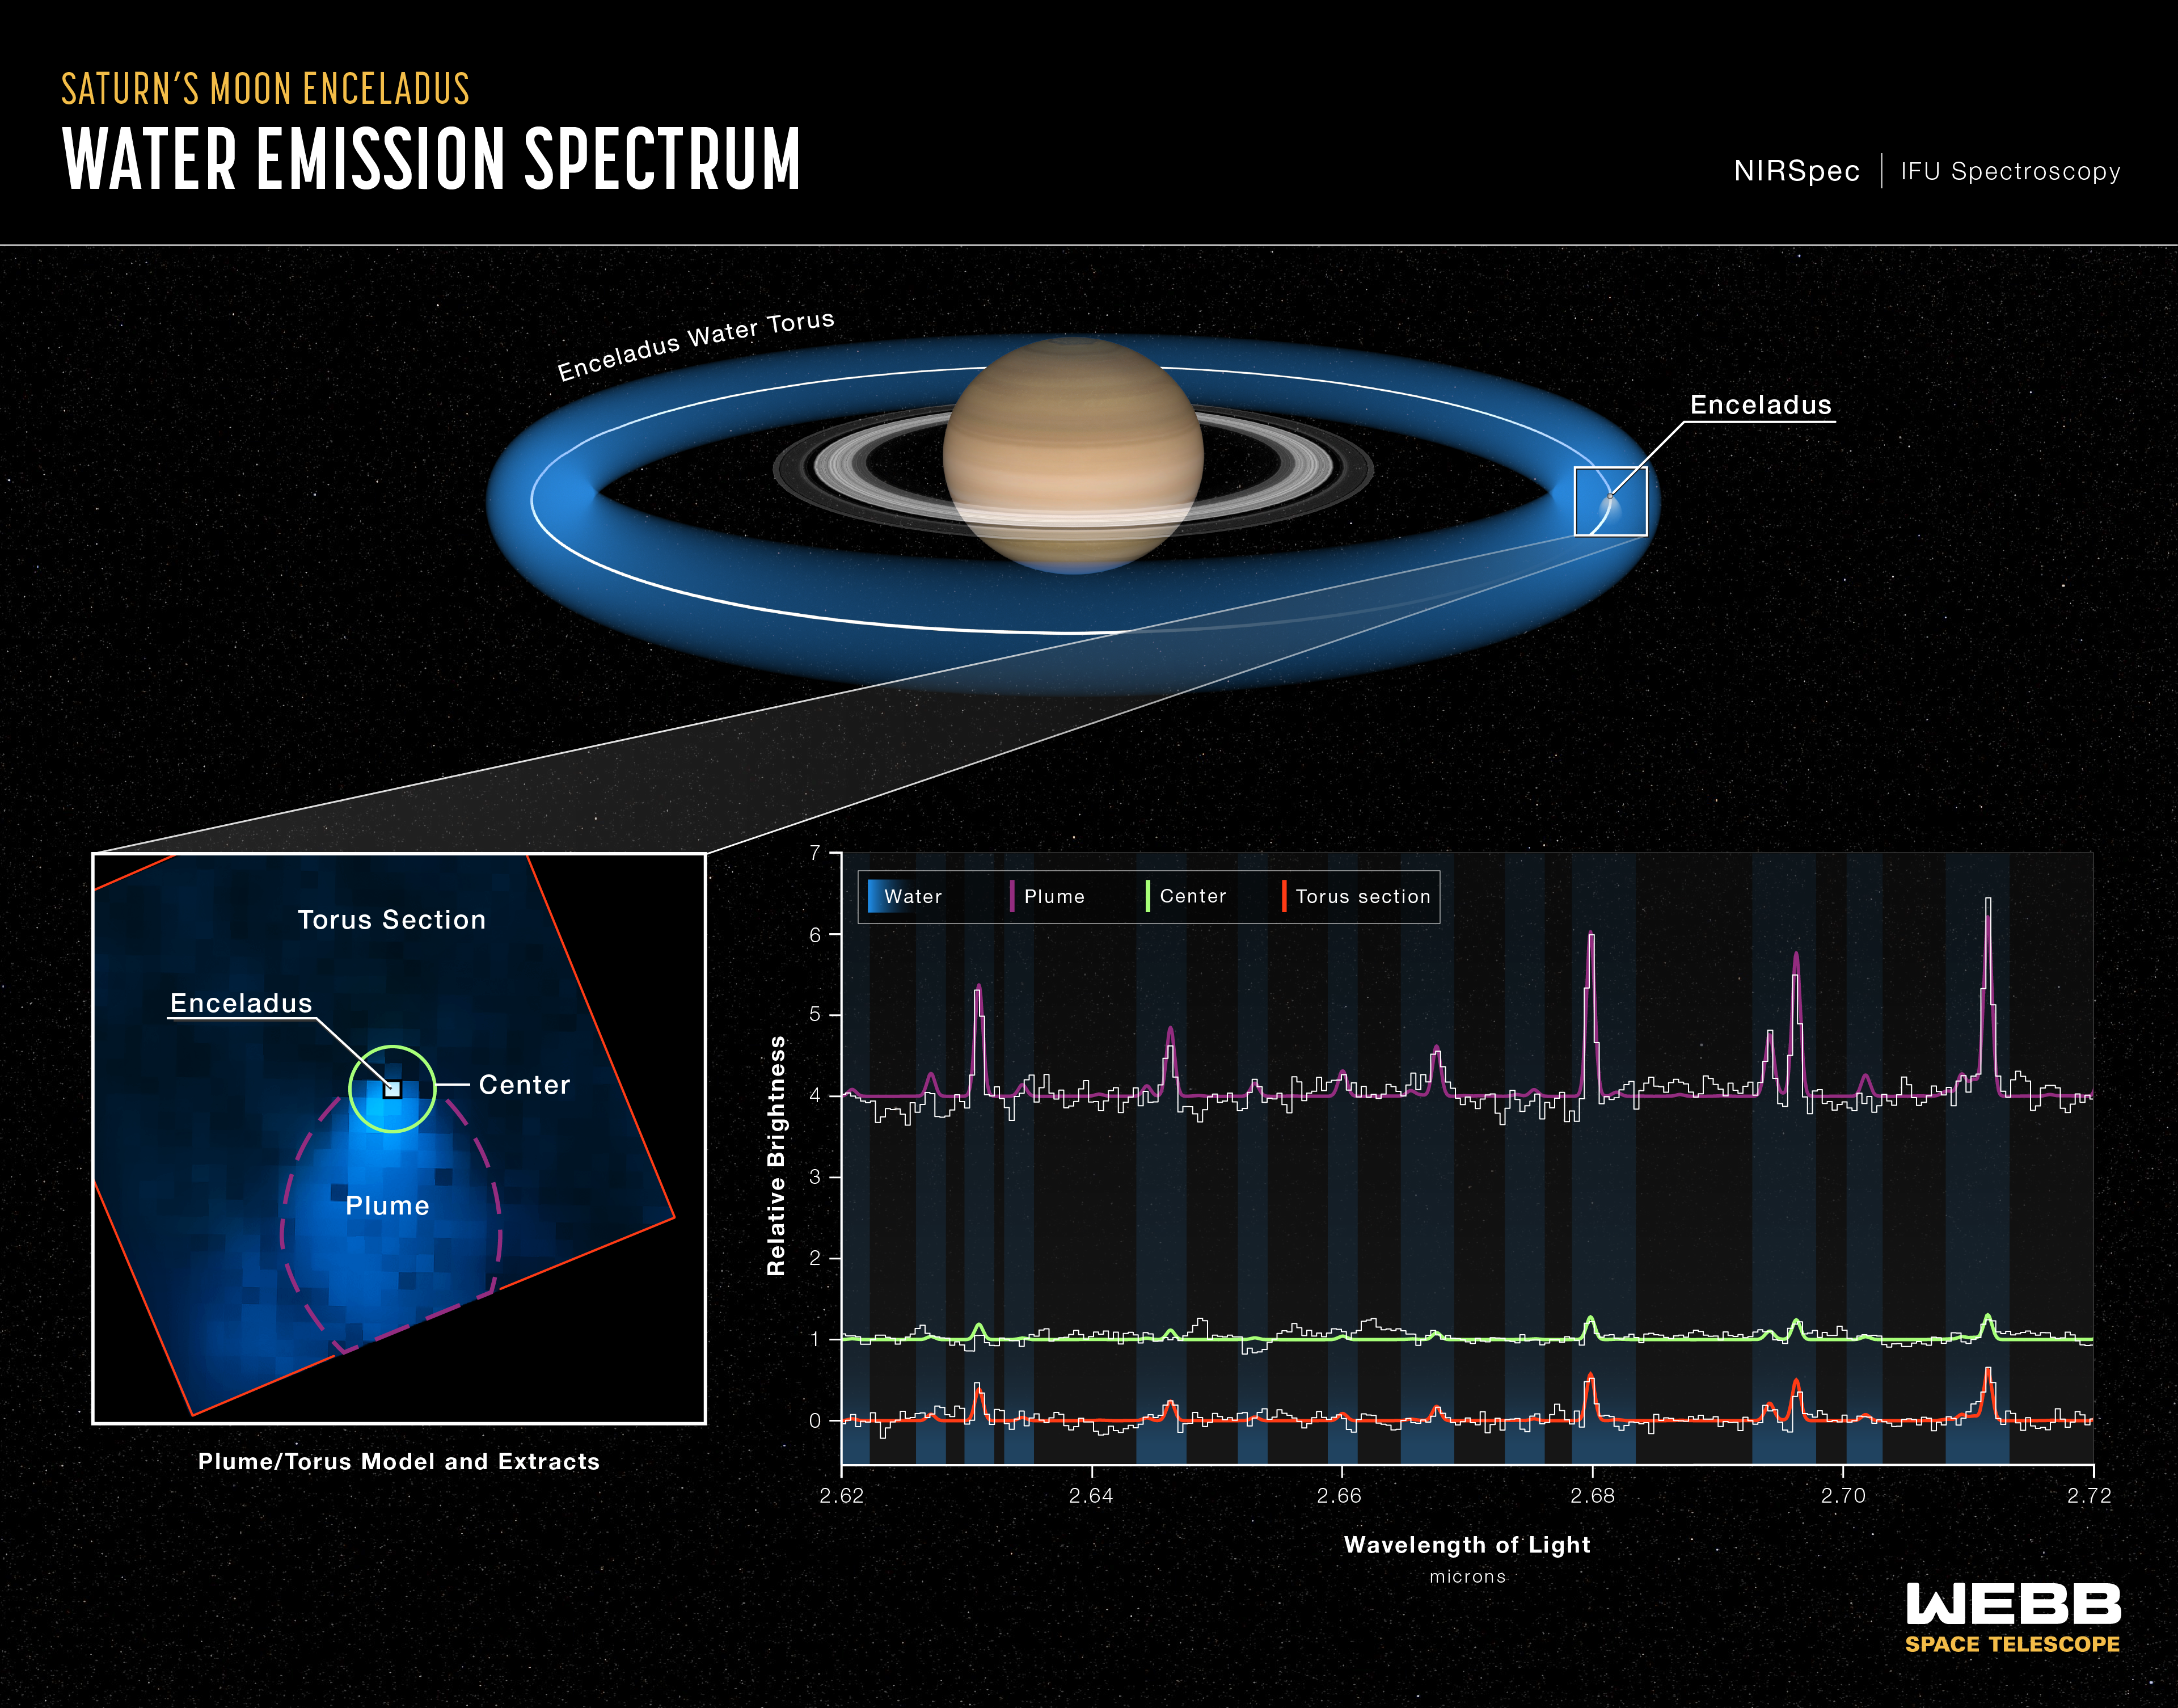 Na ilustracji (5): Wyjaśniono w jaki sposób jeden z księżyców Saturna (Enceladus) dostarcza wodę do całego systemu księżyców otaczających tą planetę z pierścieniami. Na zdjęciu ze spektrografu NIRSpec współpracującego z Teleskopem Webba zarejestrowano wyrzut obłoku/pióropusza składający się z pary wodnej (ang. plume - „pióropusz”) z okolic południowego bieguna Enceladusa aż na odległość ponad ~20 jego średnic (~10 tys. km). Natomiast moduł IFU w spektrografie NIRSpec pozwolił również uzyskać wgląd w to, jak woda z Enceladusa rozprzestrzenia się w otoczeniu Saturna. Enceladus krąży wokół Saturna z okresem 33 godzin i za sobą rozpyla wodę w kształt torusa, czyli takiego obwarzanka w kolorze niebieskim na rysunku. Źródło: NASA, ESA, CSA, STScI, Leah Hustak (STScI)